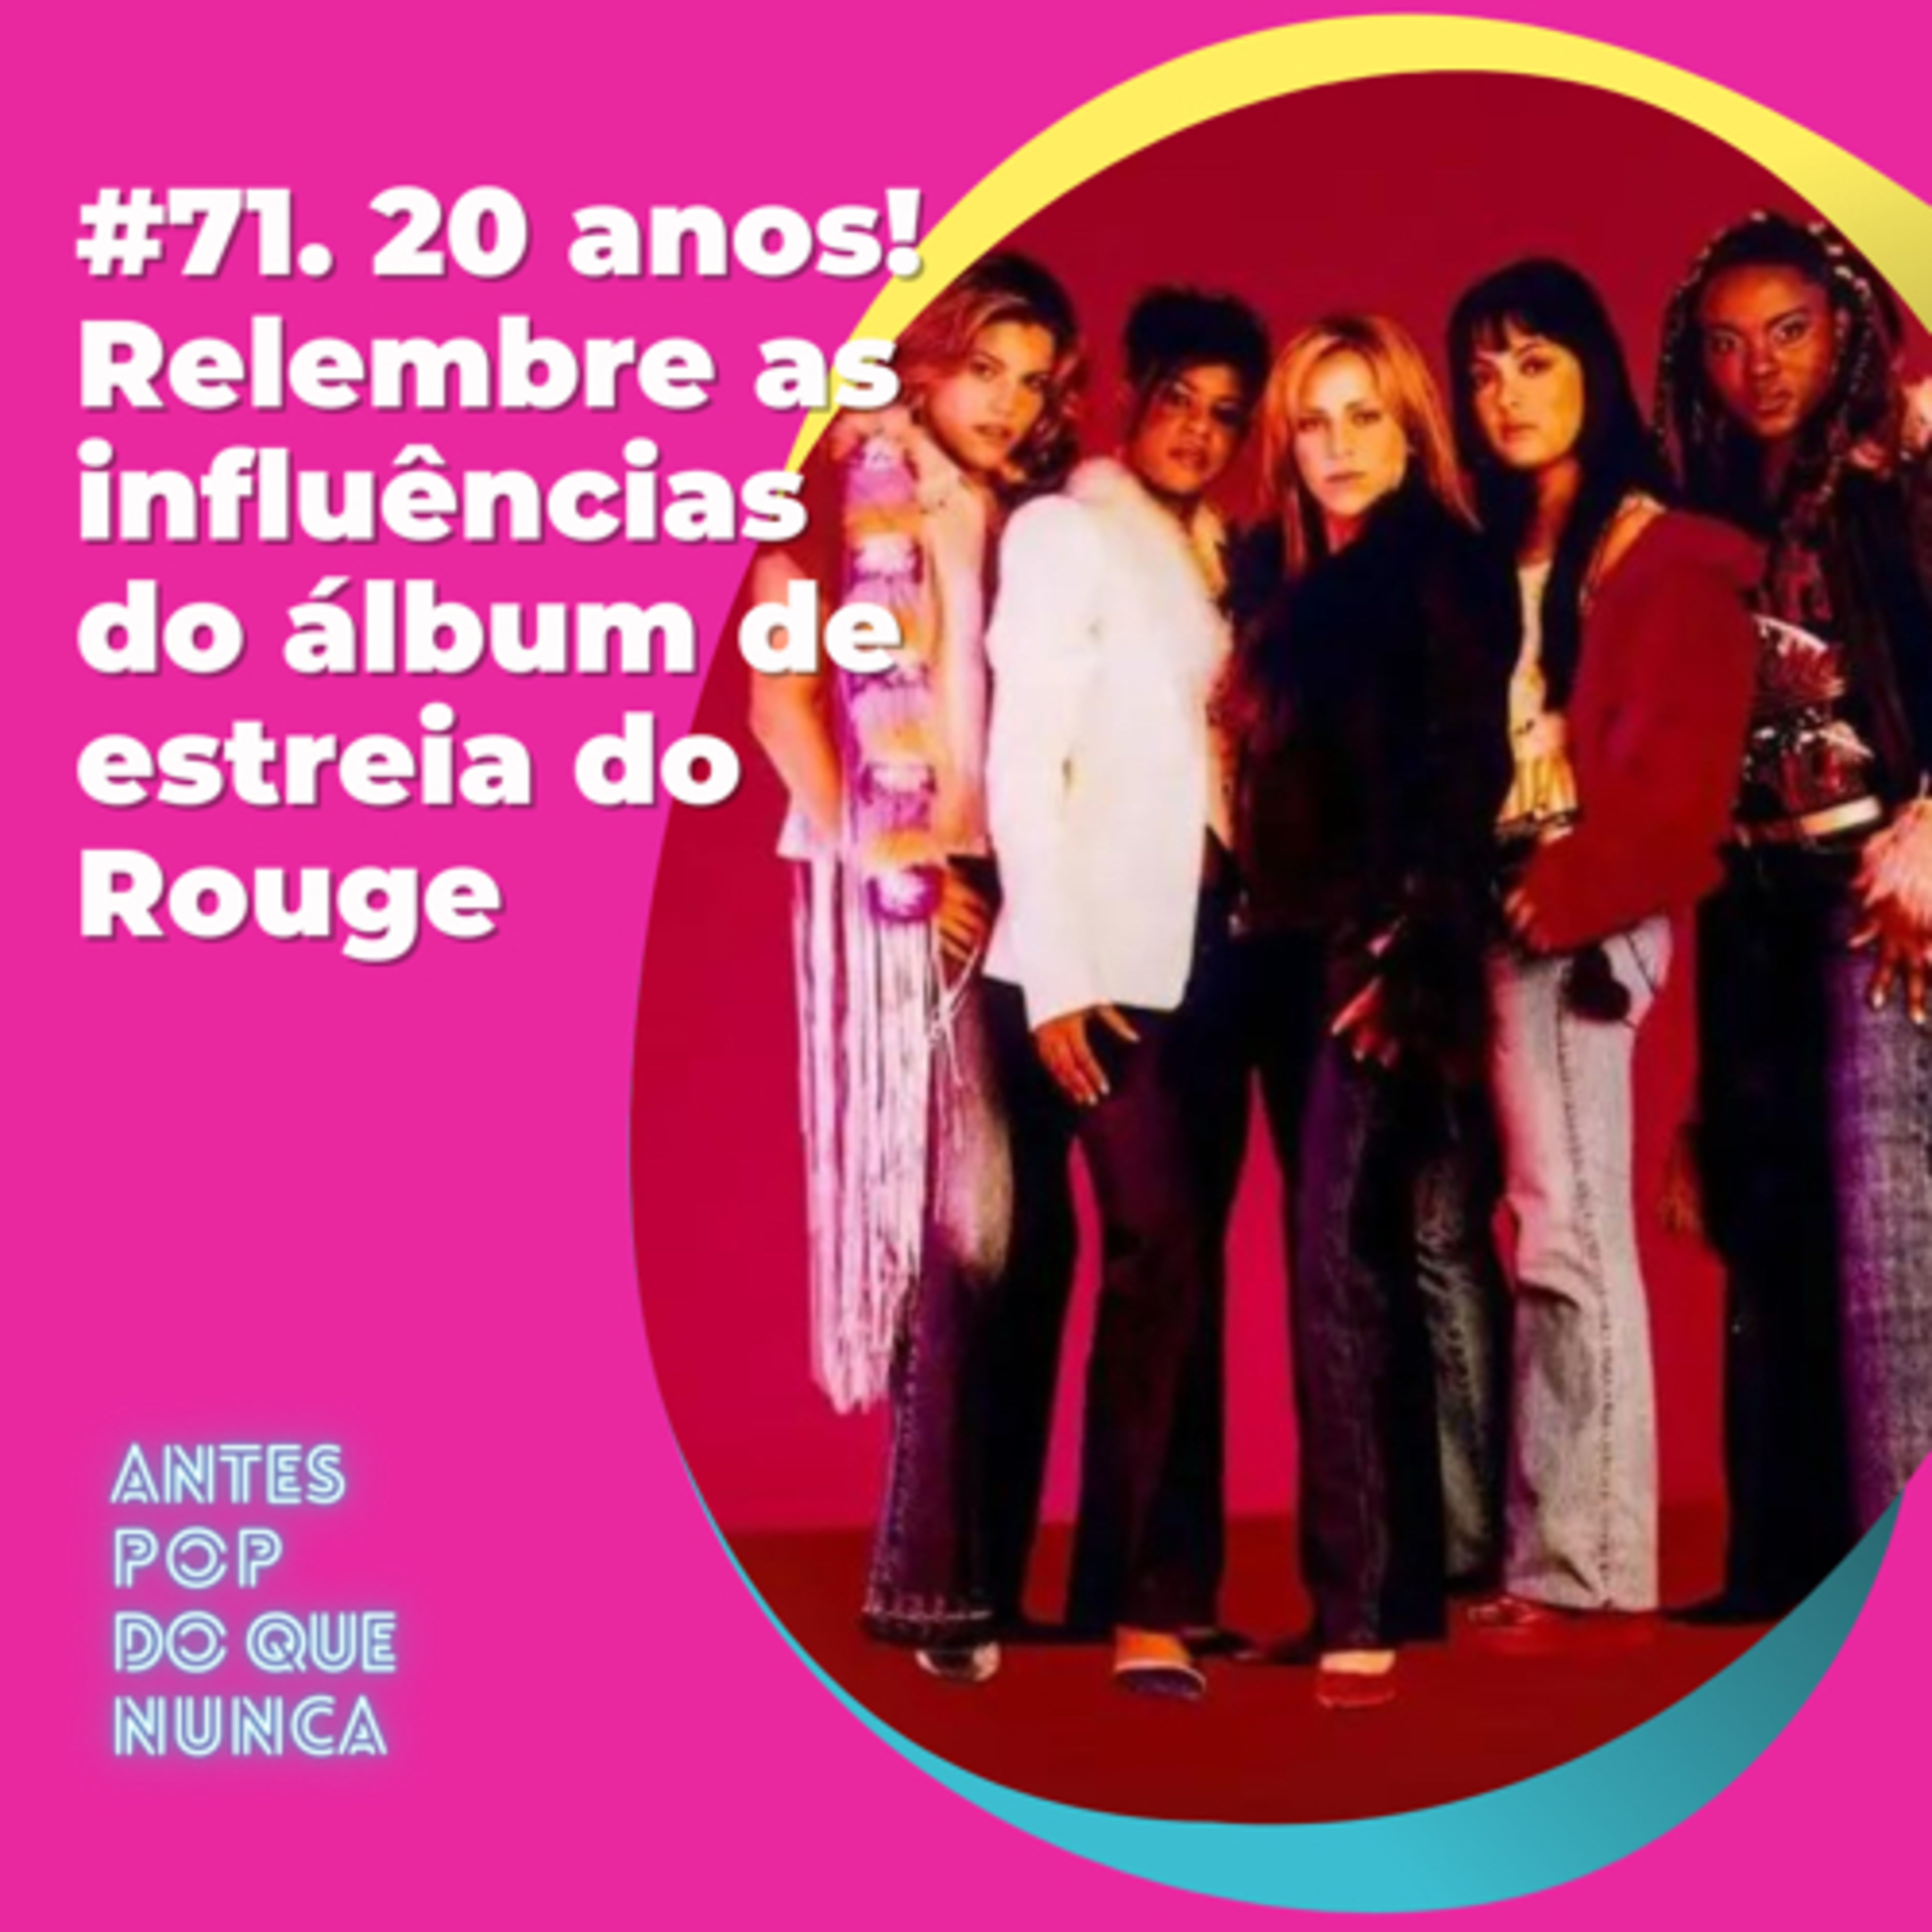 #71. 20 anos! Relembre as influências do álbum de estreia do Rouge